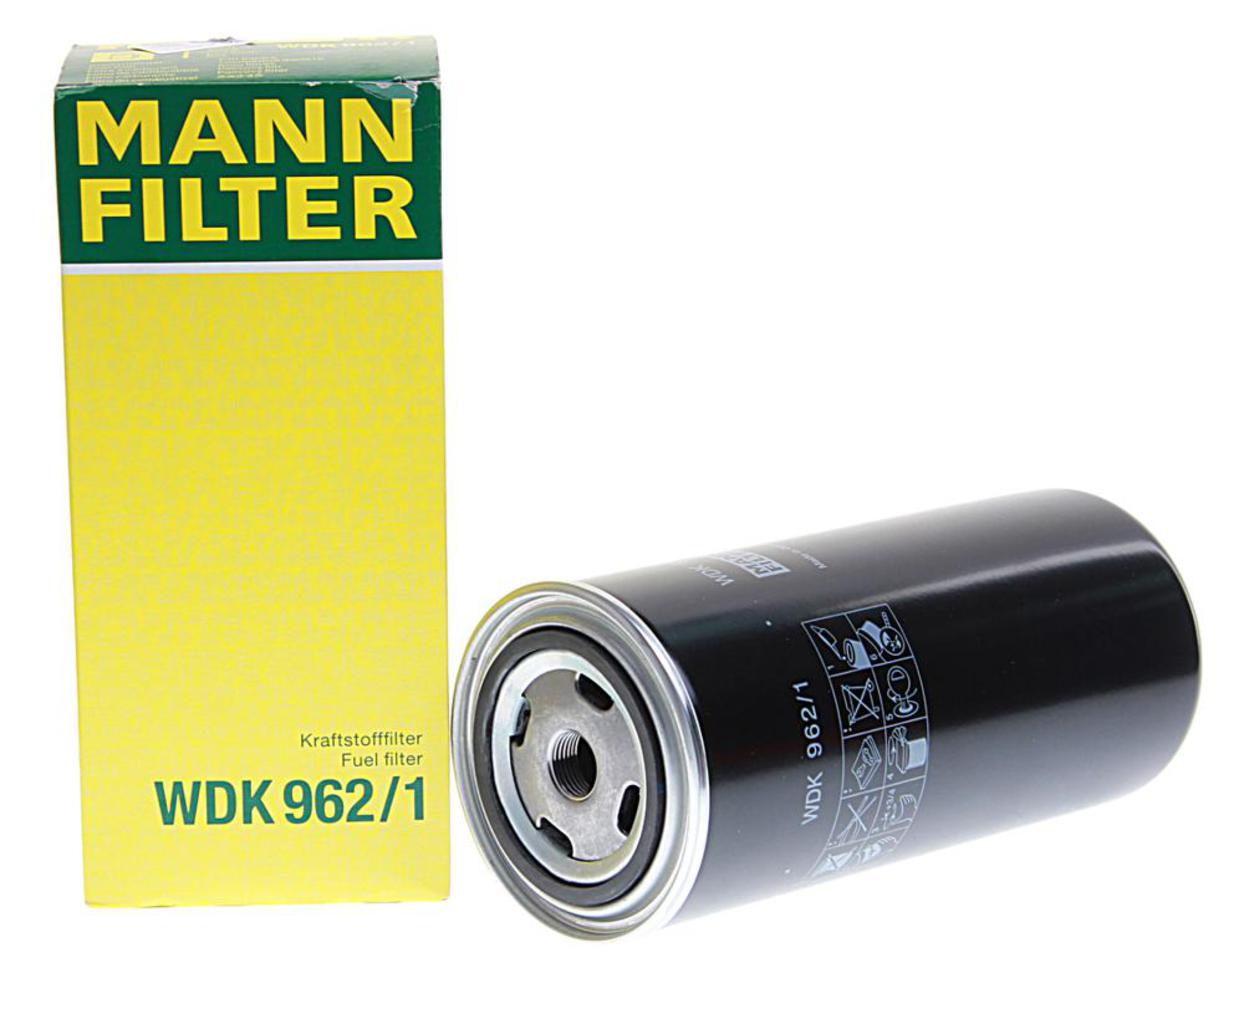 Фильтр тонкой очистки ямз 534. Фильтр топливный ЯМЗ 5340.1117075. Фильтр топливный Mann-Filter wdk962/1. Фильтр топливный 5340.1117075-01 ЯМЗ. Фильтр масляный ЯМЗ 534 man.